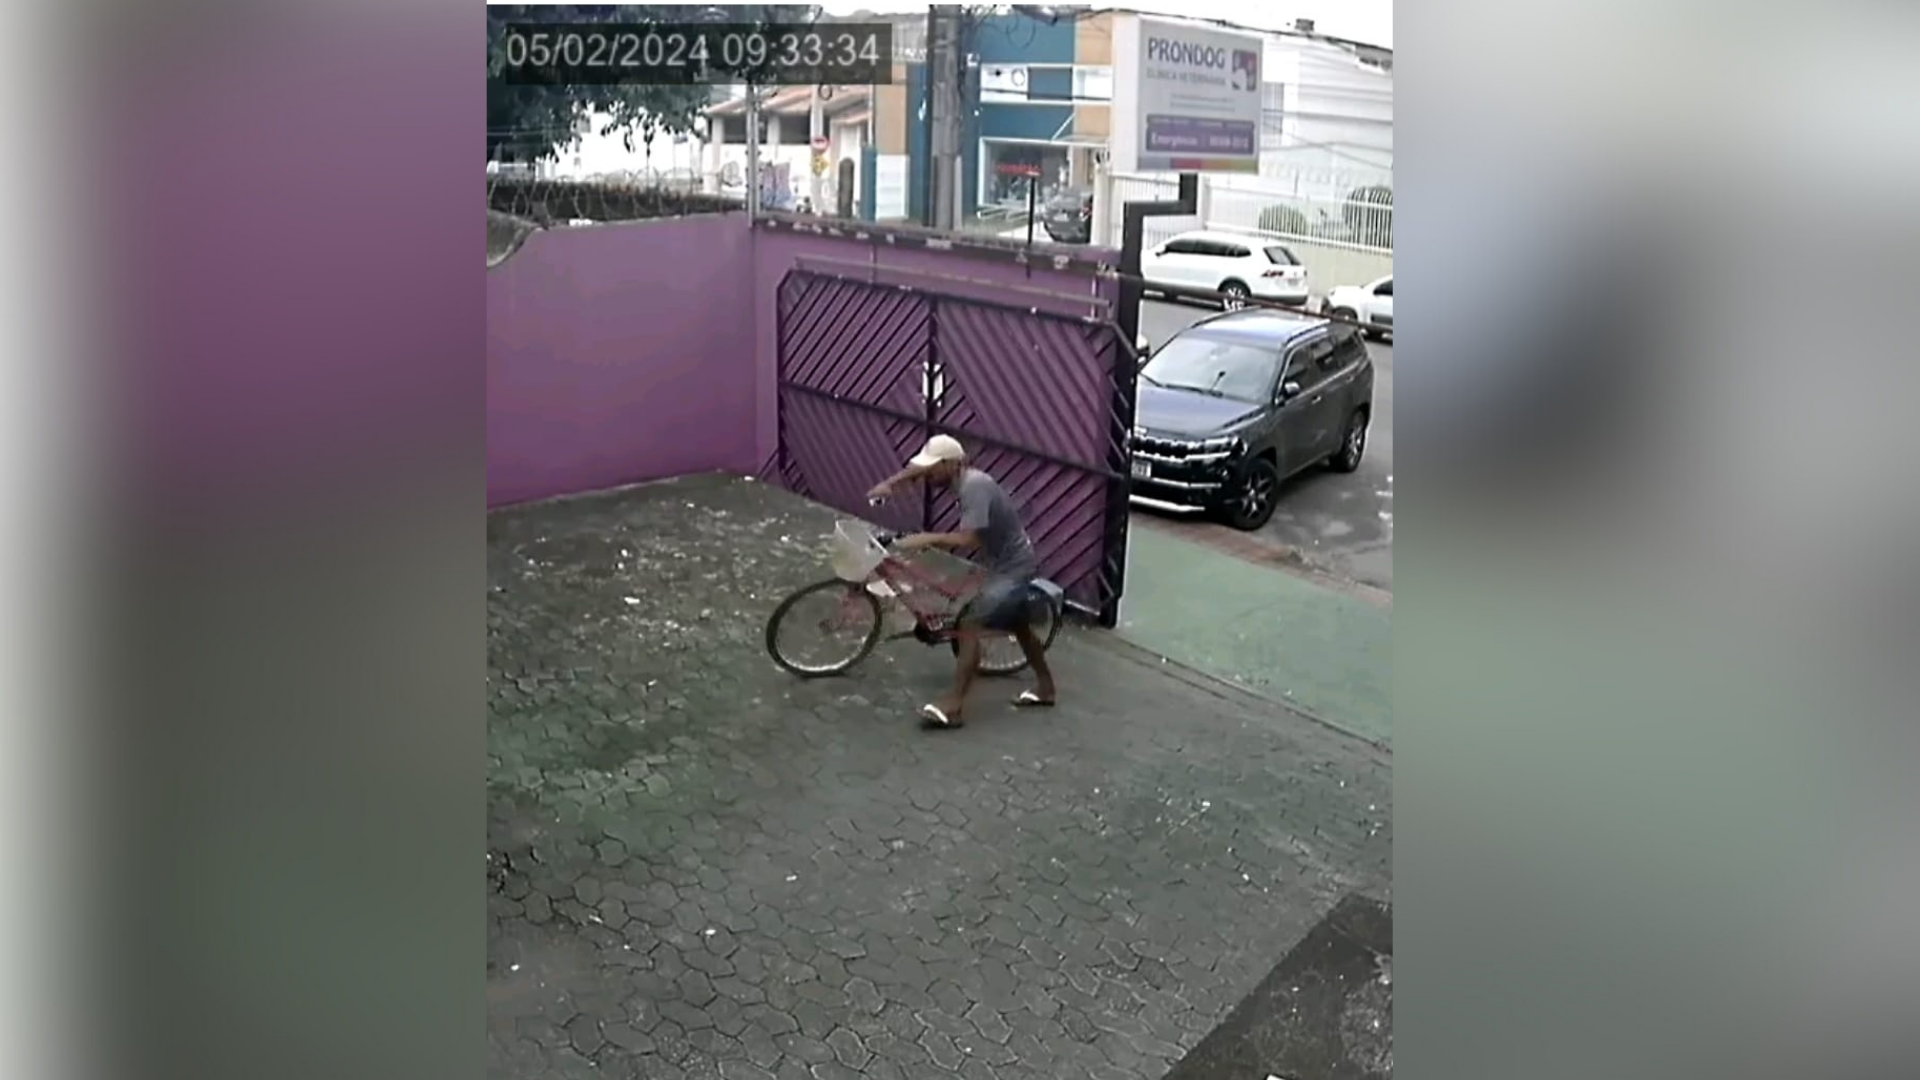 Homem armado estava de bicicleta e entrou estabelecimento por volta das 9h desta segunda-feira (5) pelo portão da garagem do local, no bairro Bento Ferreira